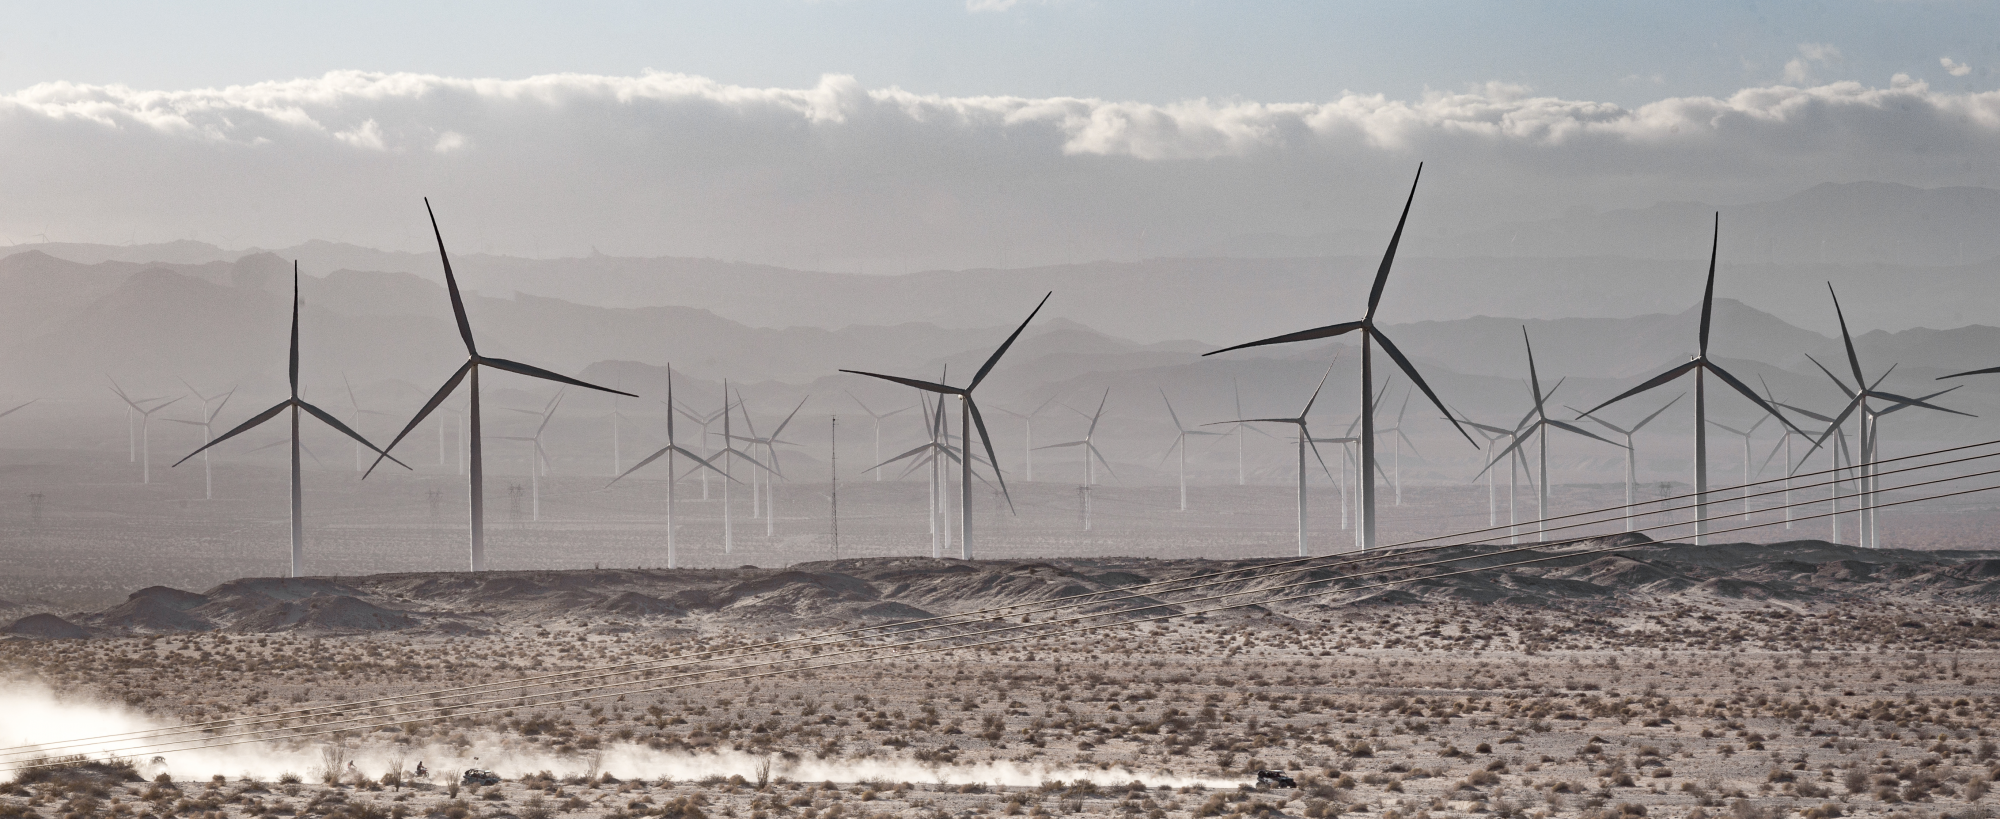 Dozens of modern windmills in a shrubby, desert landscape